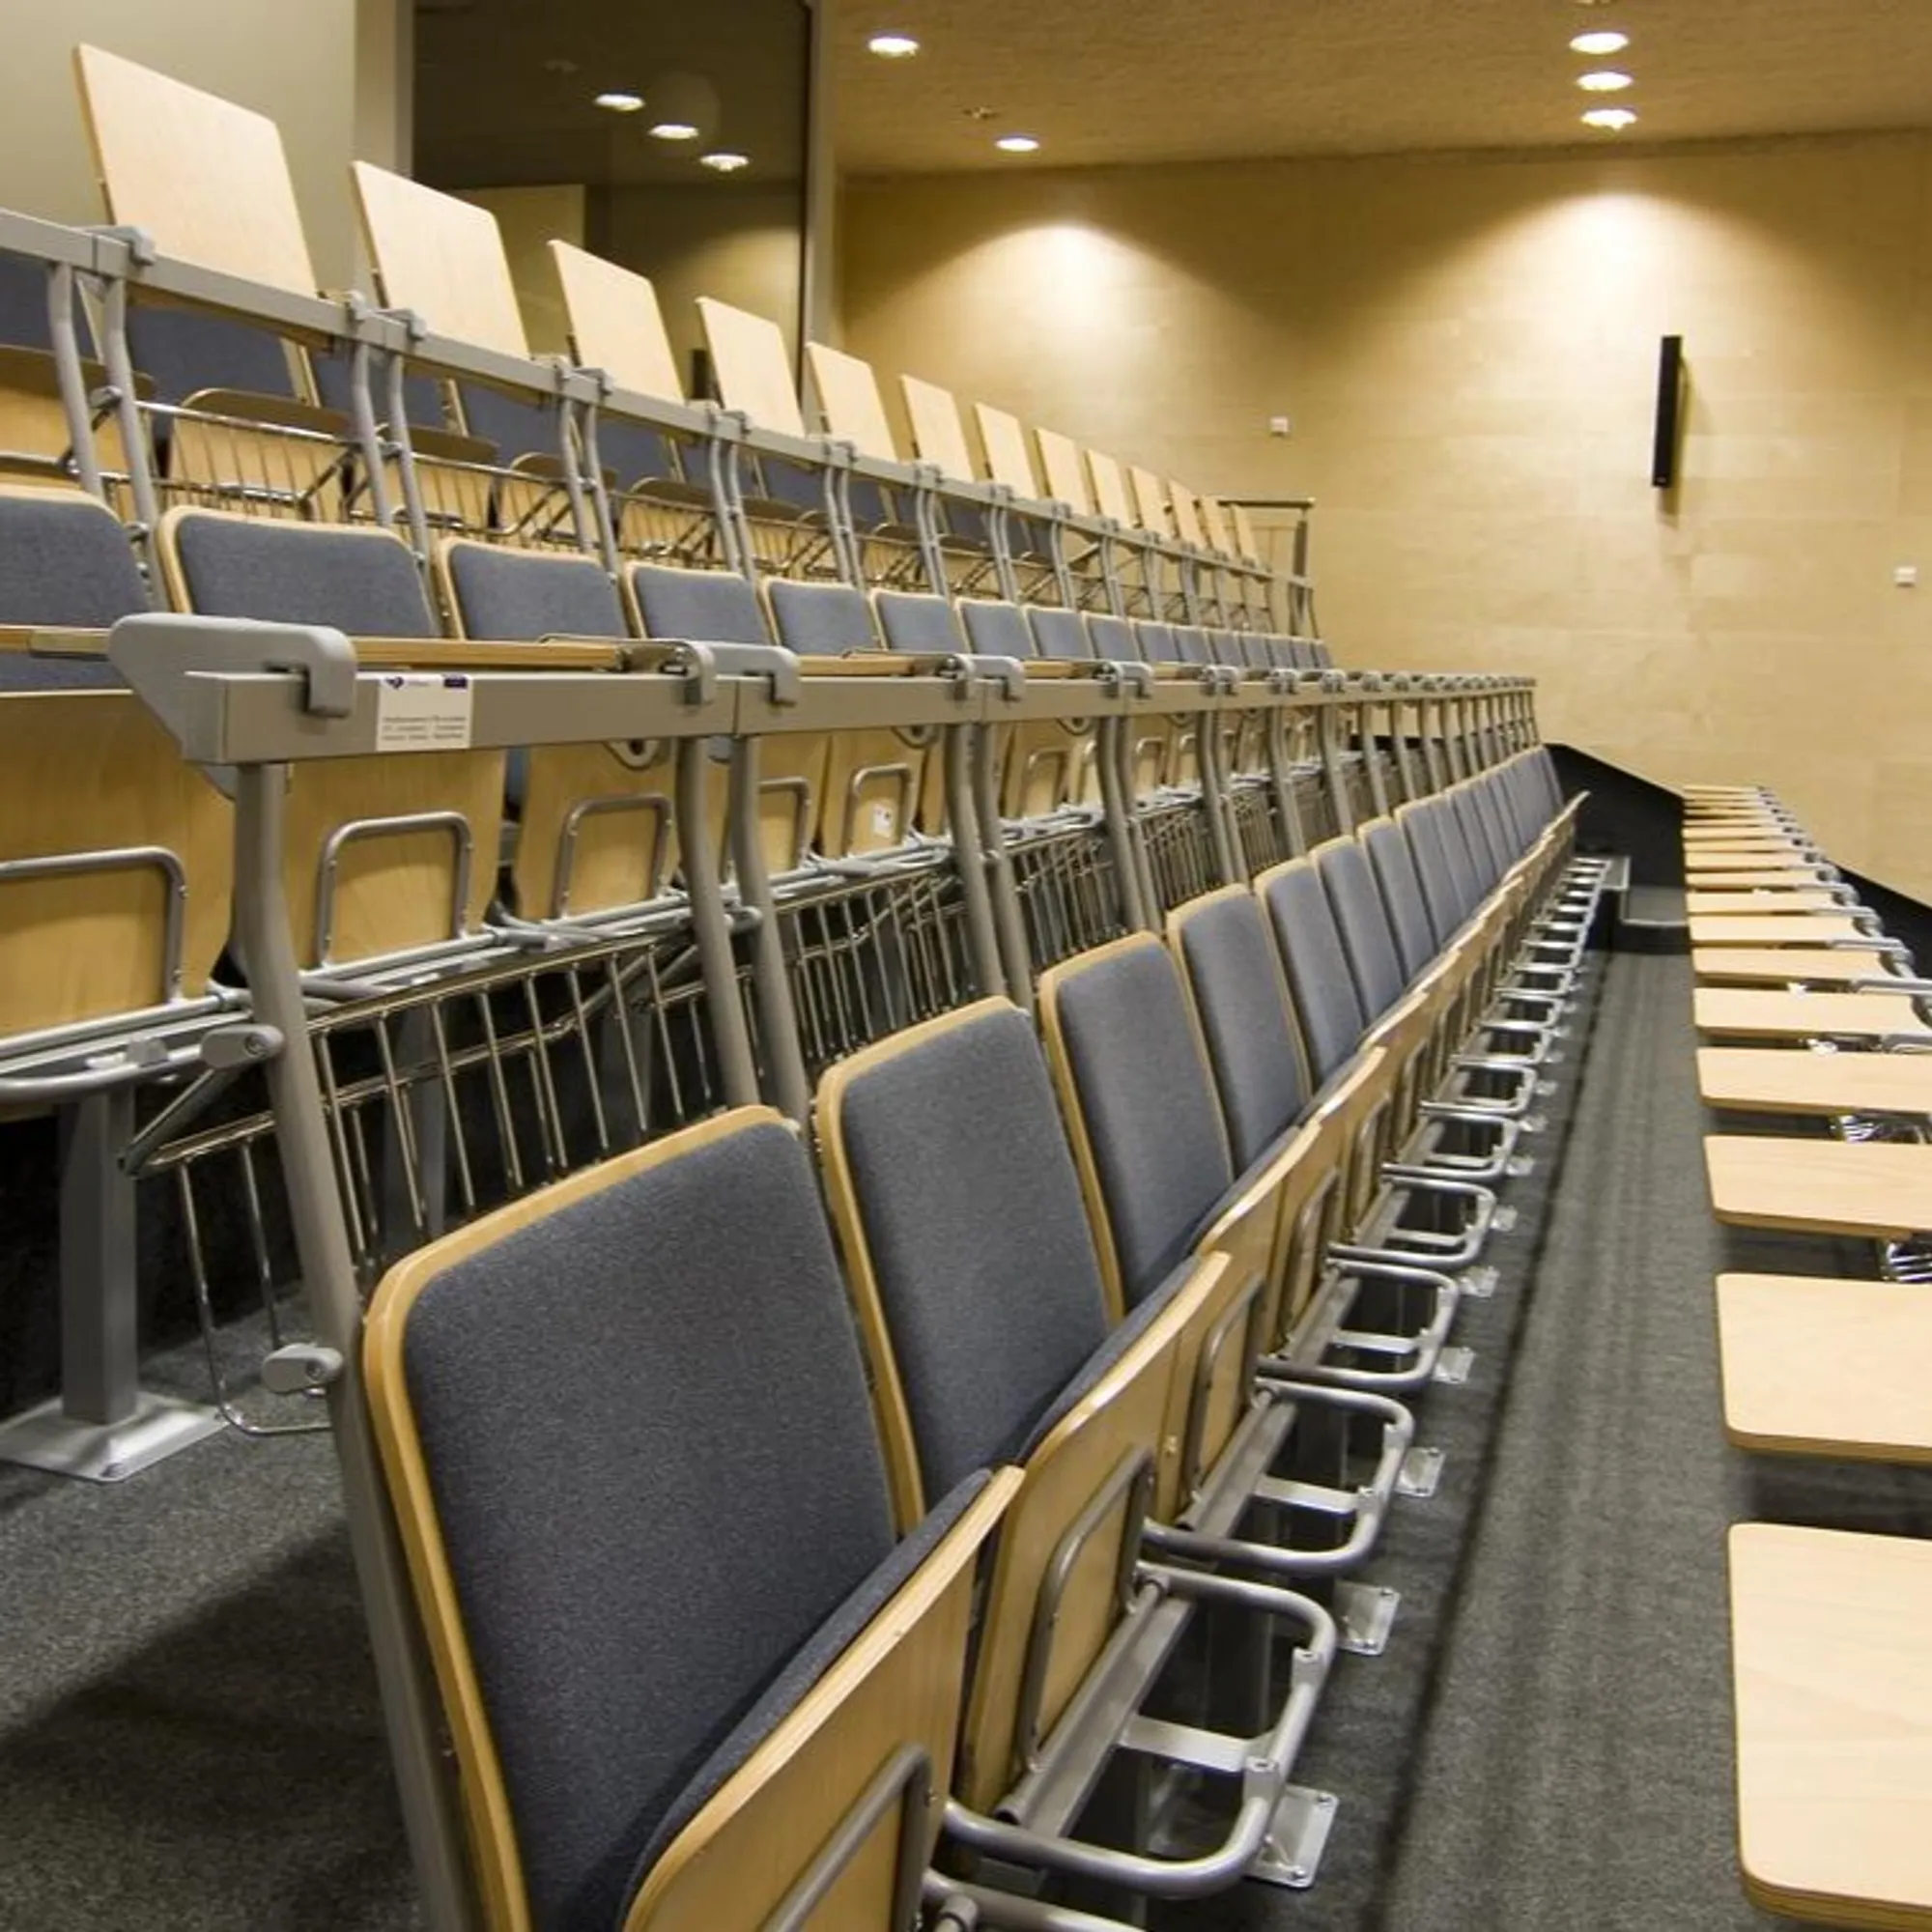 kantoorinrichting-auditorium-collegezaal-stoel-toc-zaalinrichting